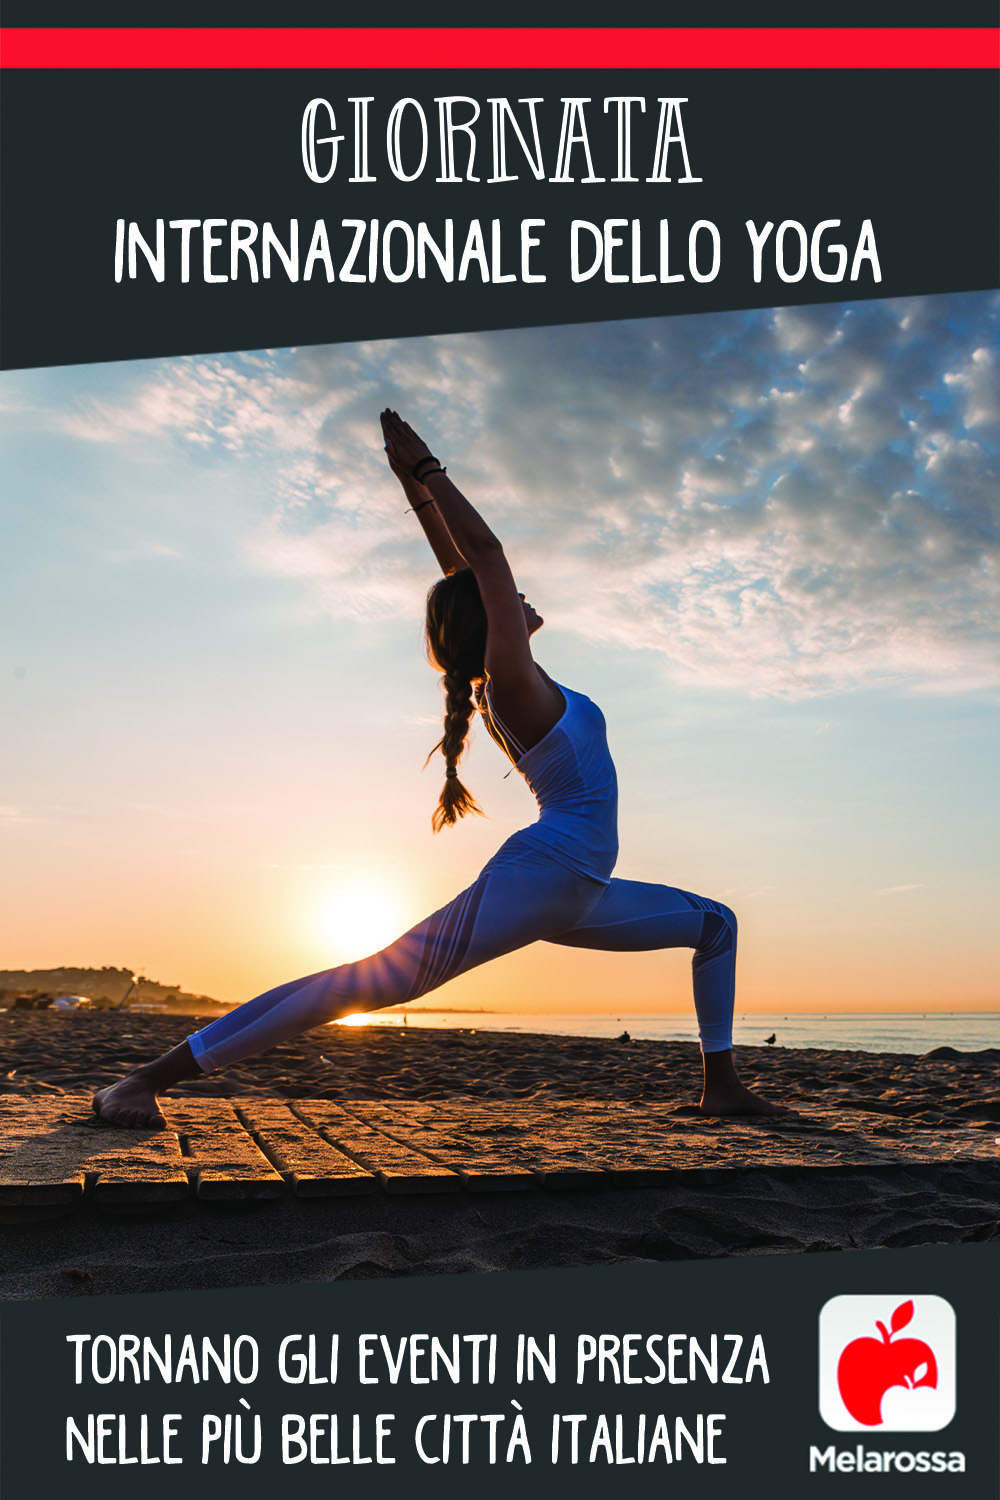 Giornata internazionale dello Yoga: tornano gli eventi in presenza nelle più belle città italiane